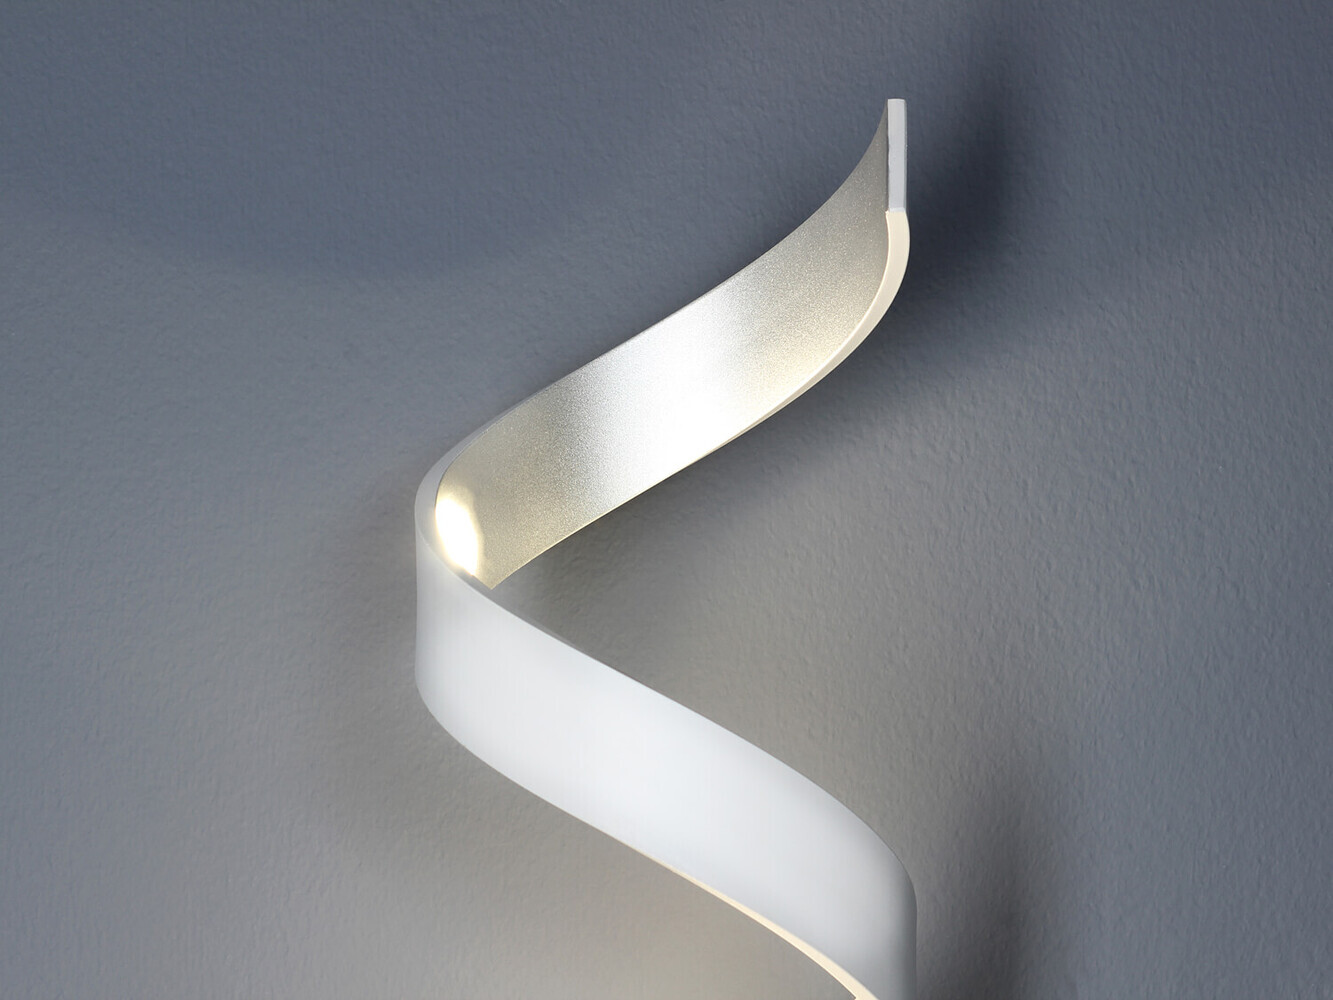 Helix Leselampe von ECO LIGHT in schickem Design